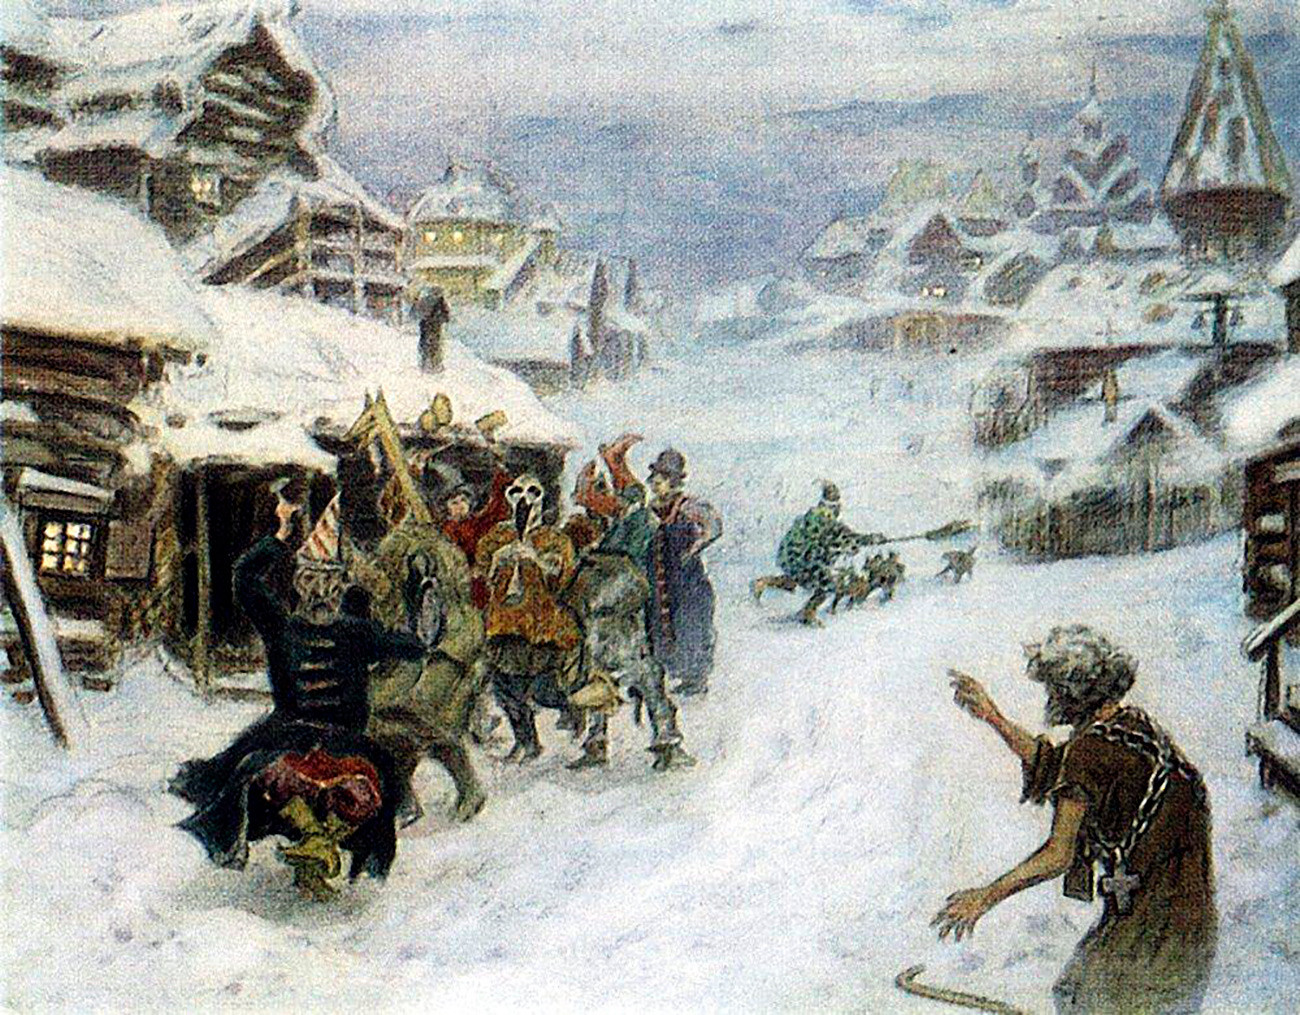 Skomorokhs par Apollinari Vasnetsov, 1904